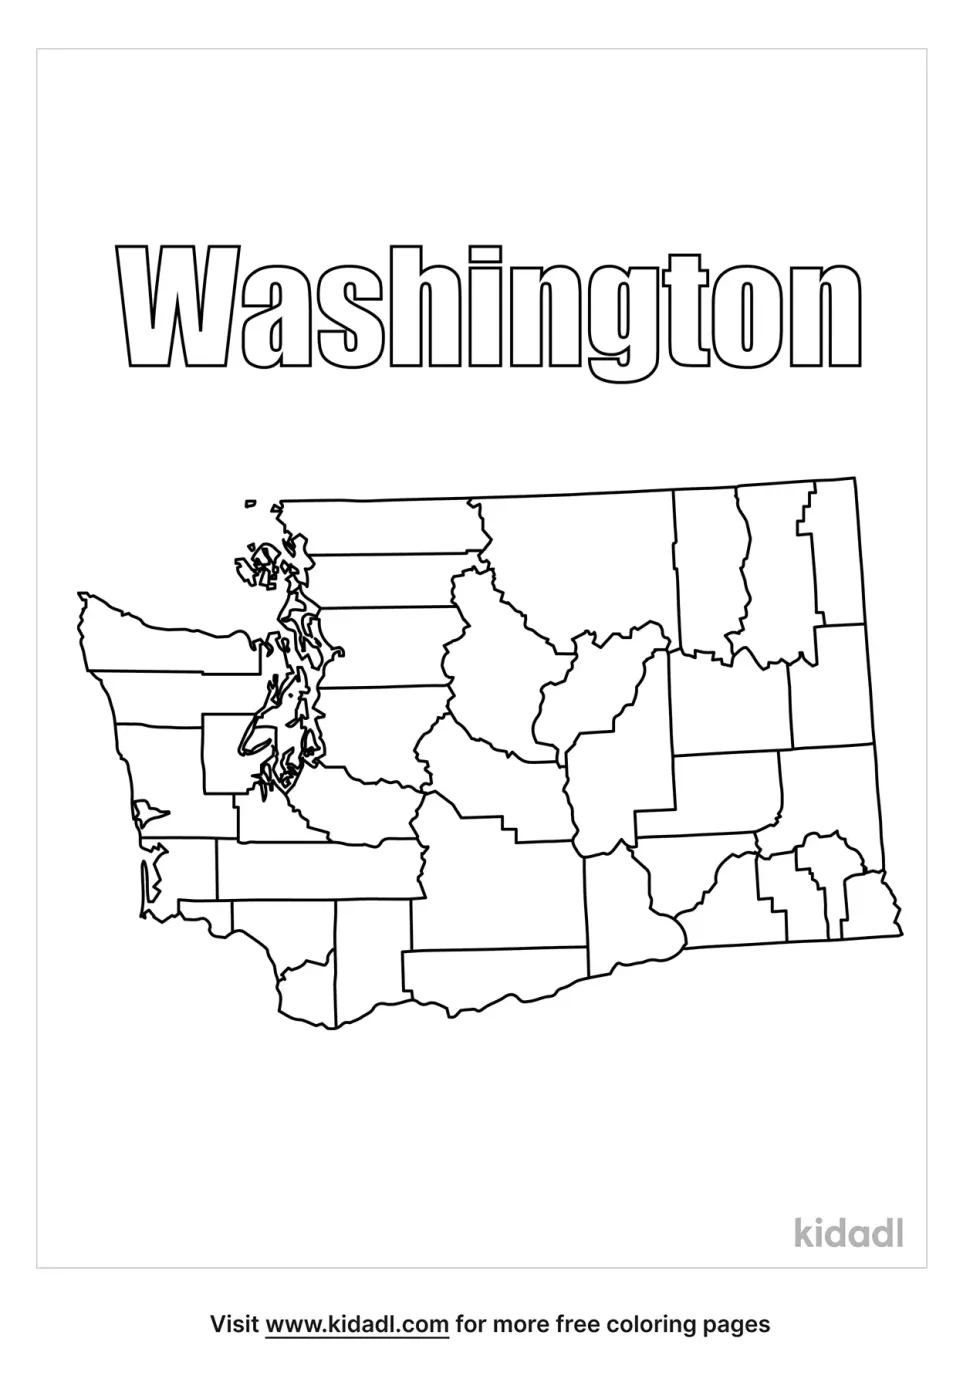 Washington Map Coloring Page